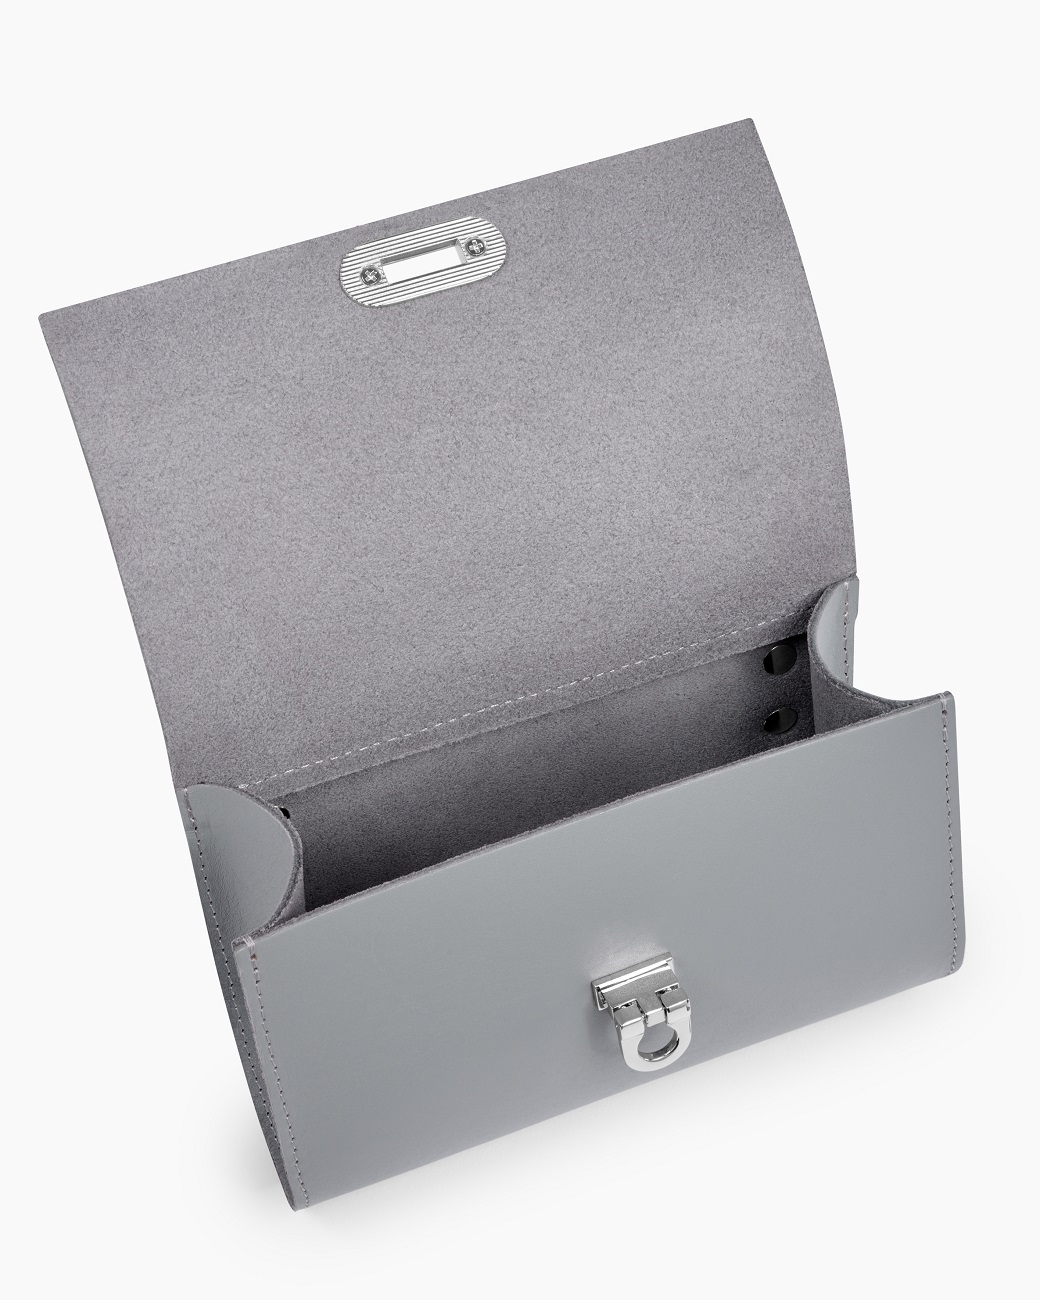 Женская кожаная поясная сумка серая A008 grey mini